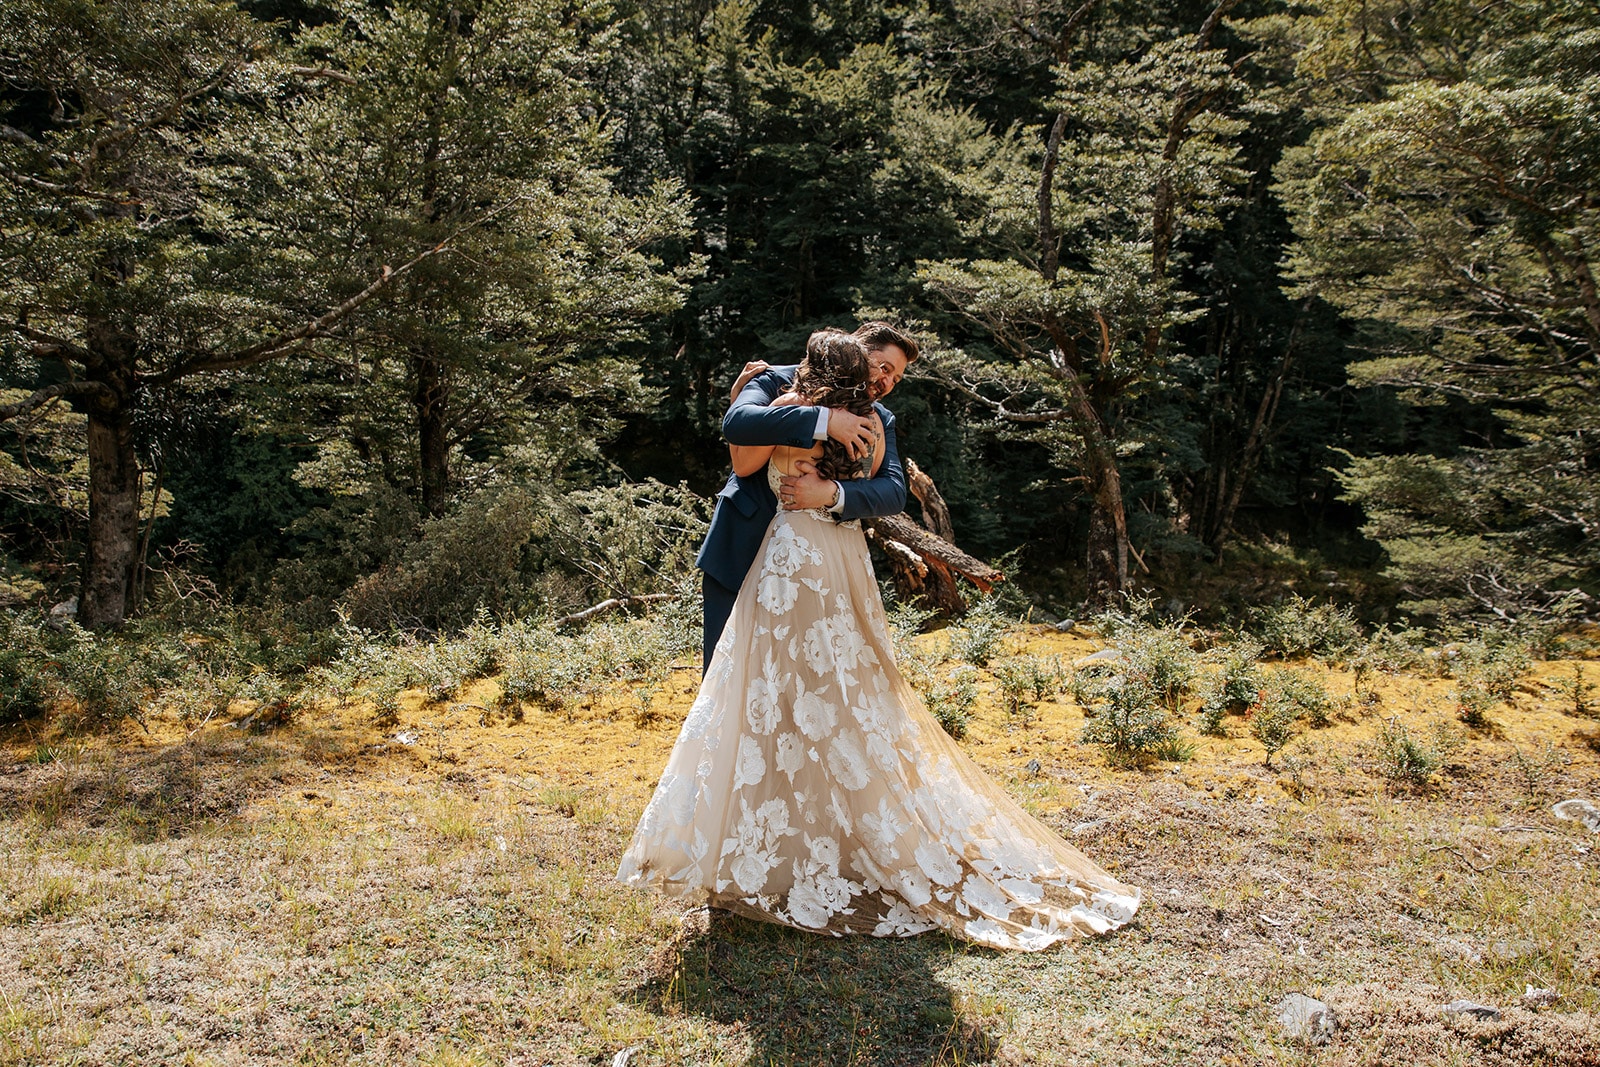 Adventure Wedding in New Zealand